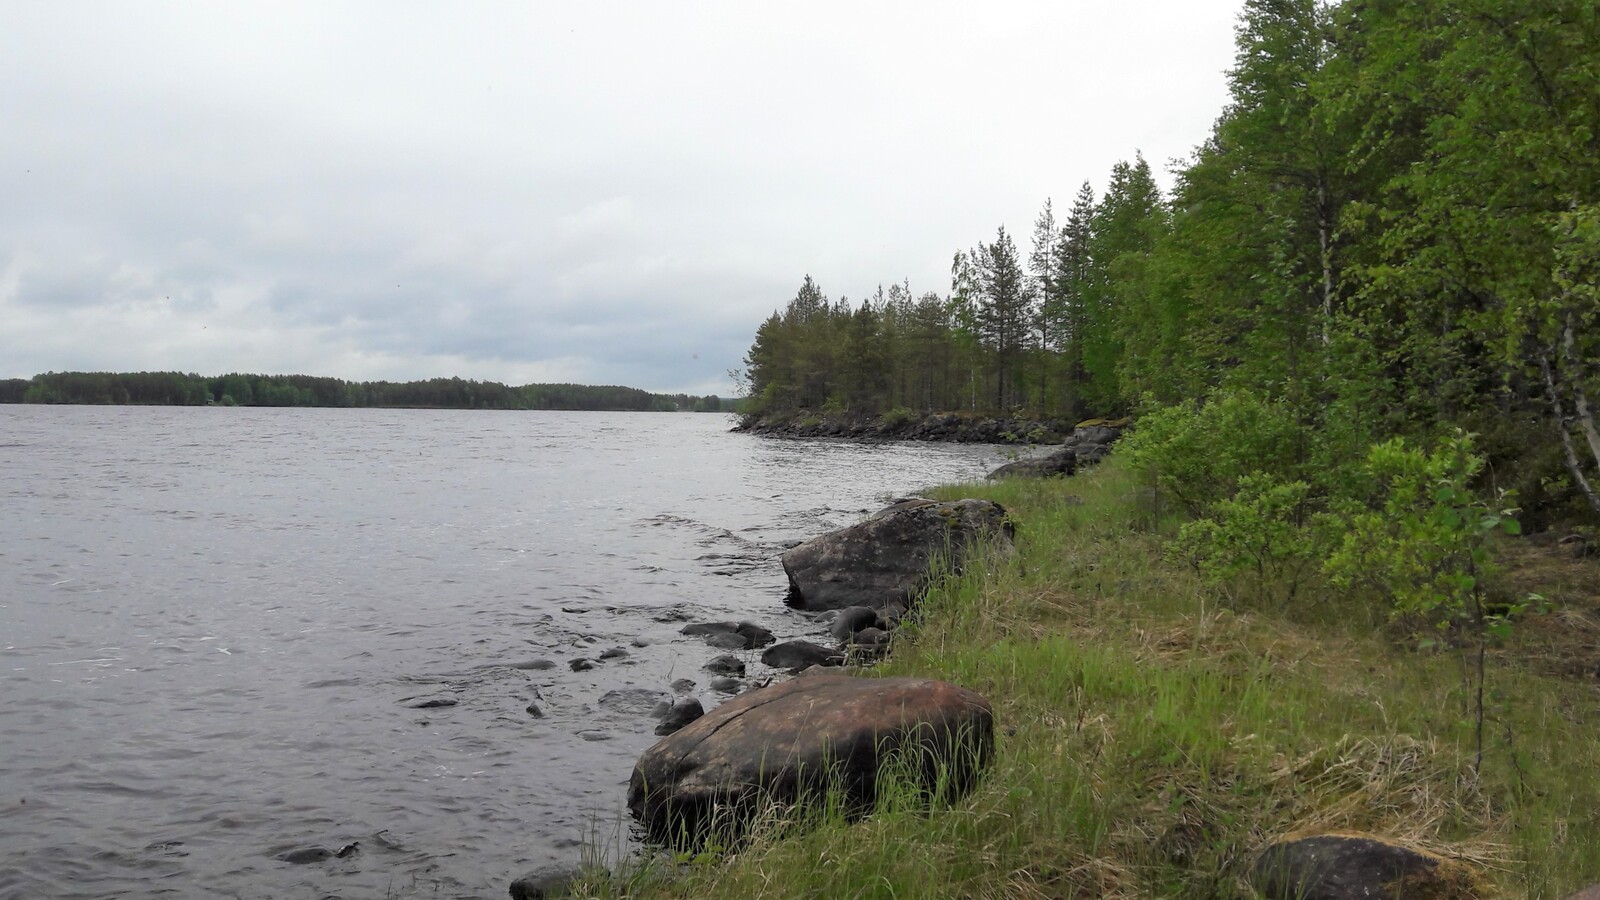 Kesäinen sekametsä reunustaa järveä. Kivinen rantaviiva kääntyy vasemmalle.